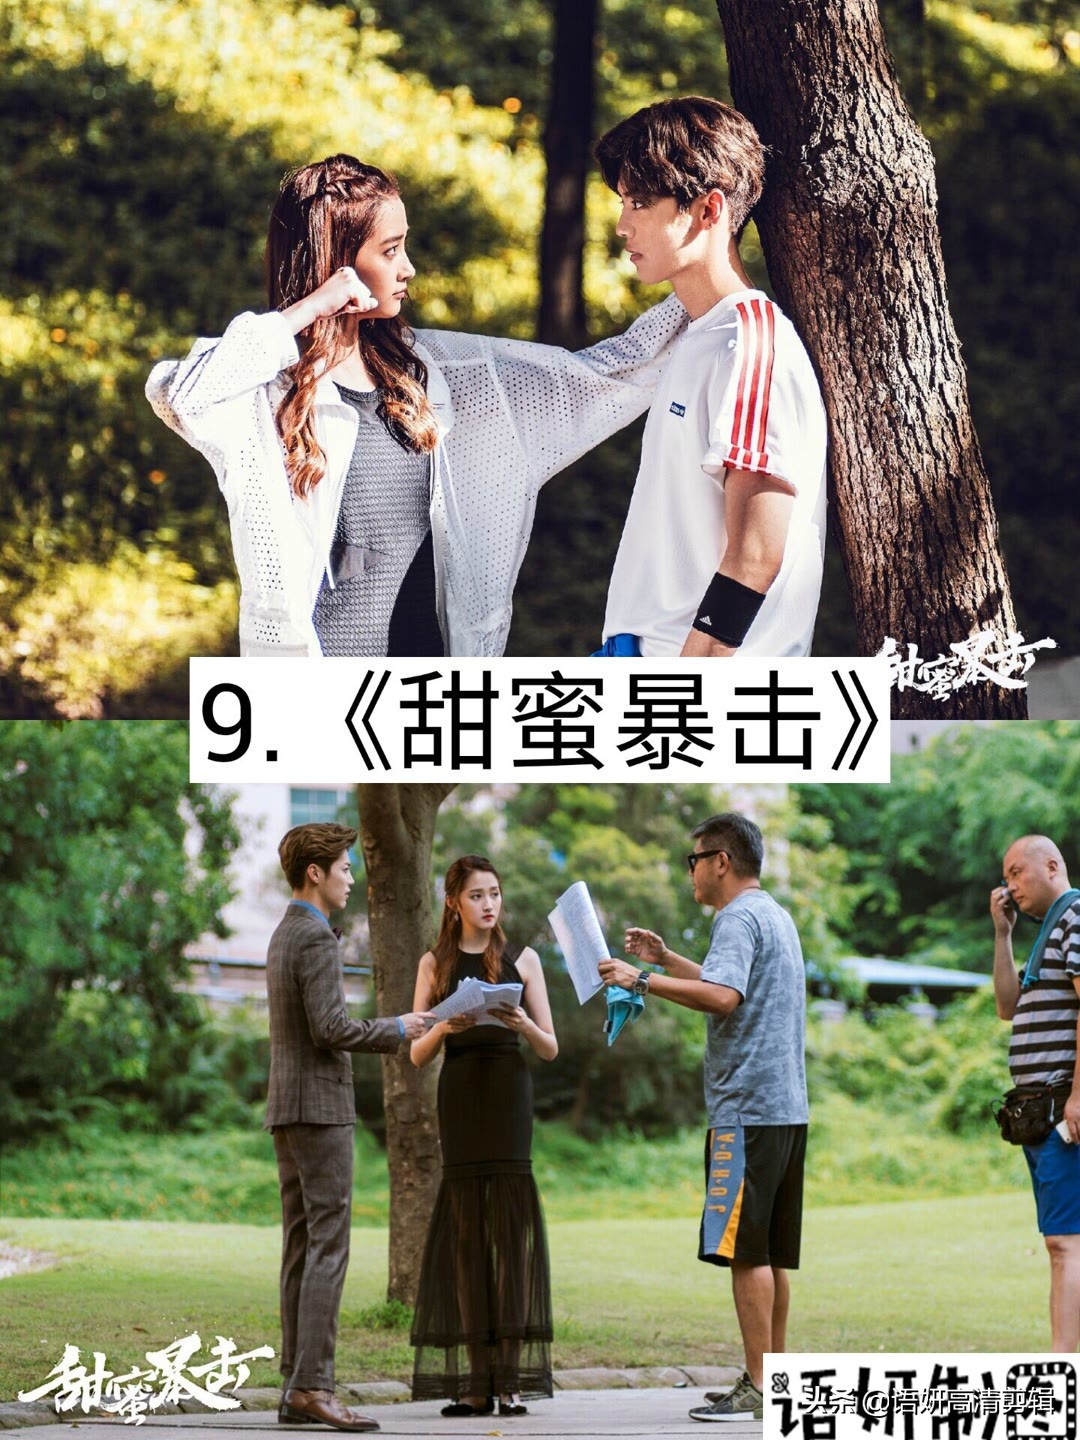 推荐9部鹿晗出演的影视剧，你看过哪几部？哪部最好看？